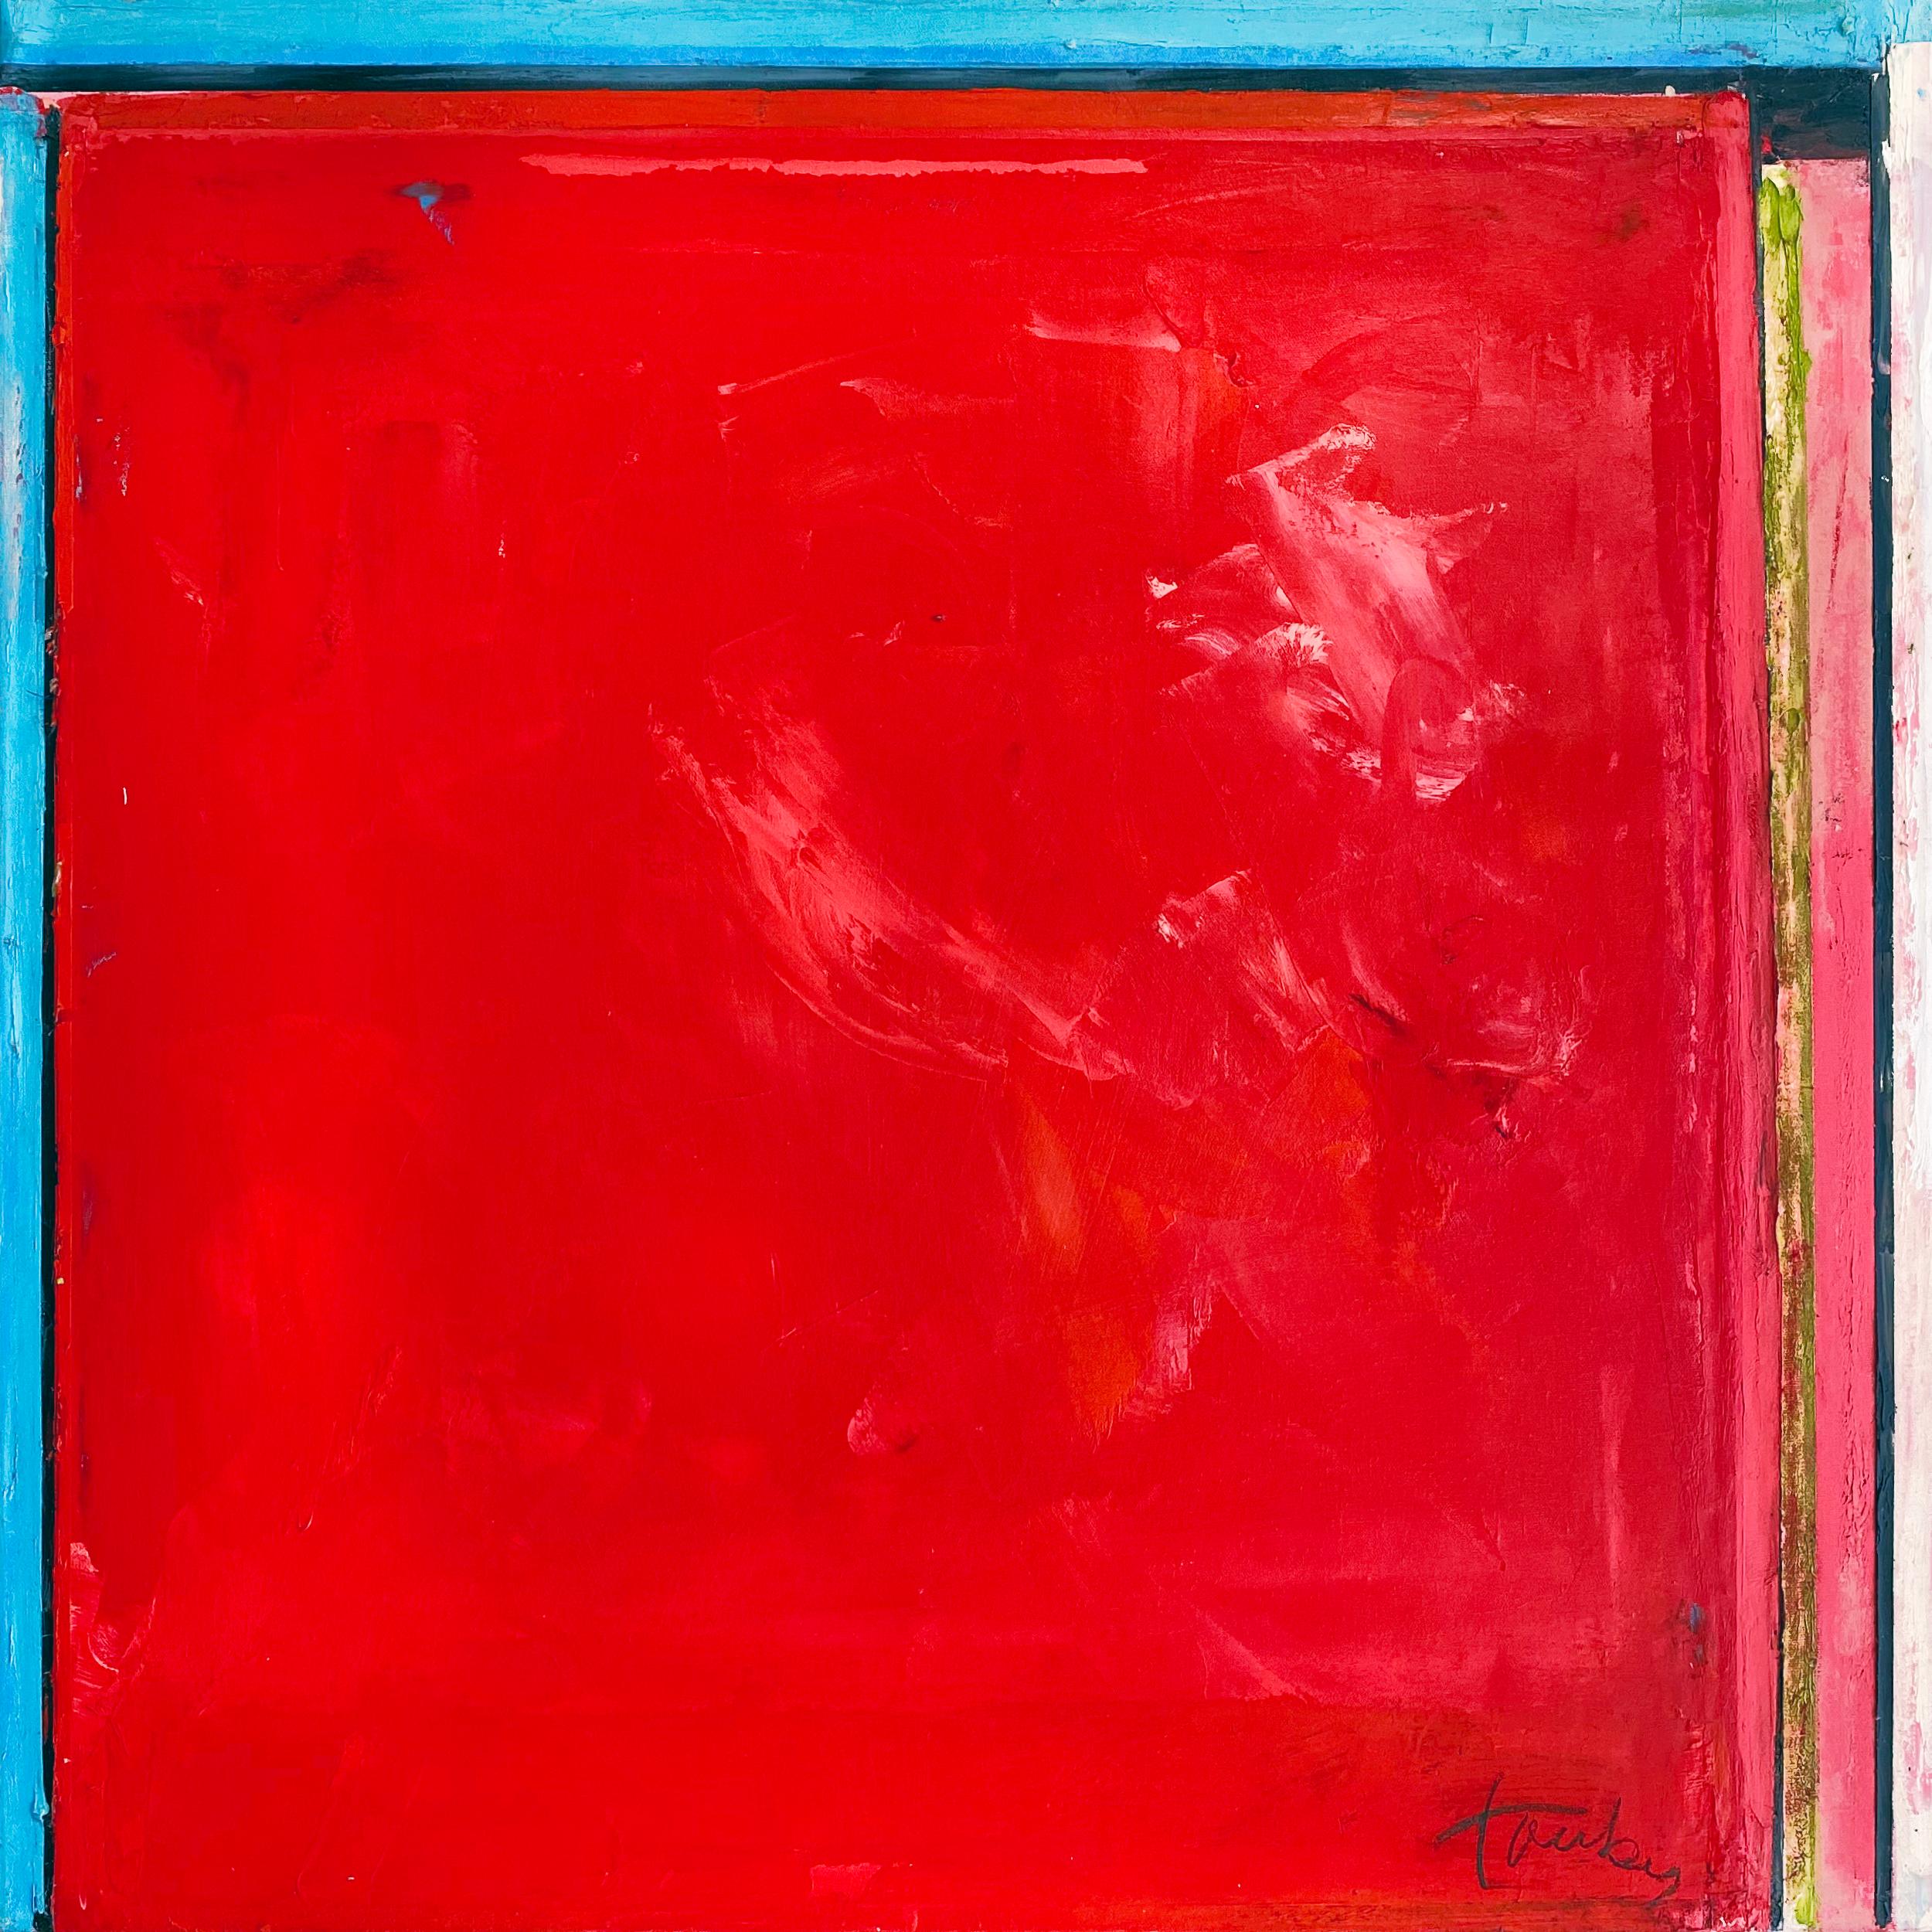 "Pigeons 562" par Linda Touby, circa 2010. Huile et cire sur toile, 30 x 30 pouces. Cette peinture présente des bandes texturales de pigments vifs, notamment rouge, orange, bleu, noir, vert et blanc. 

Cette magnifique peinture est tirée de la